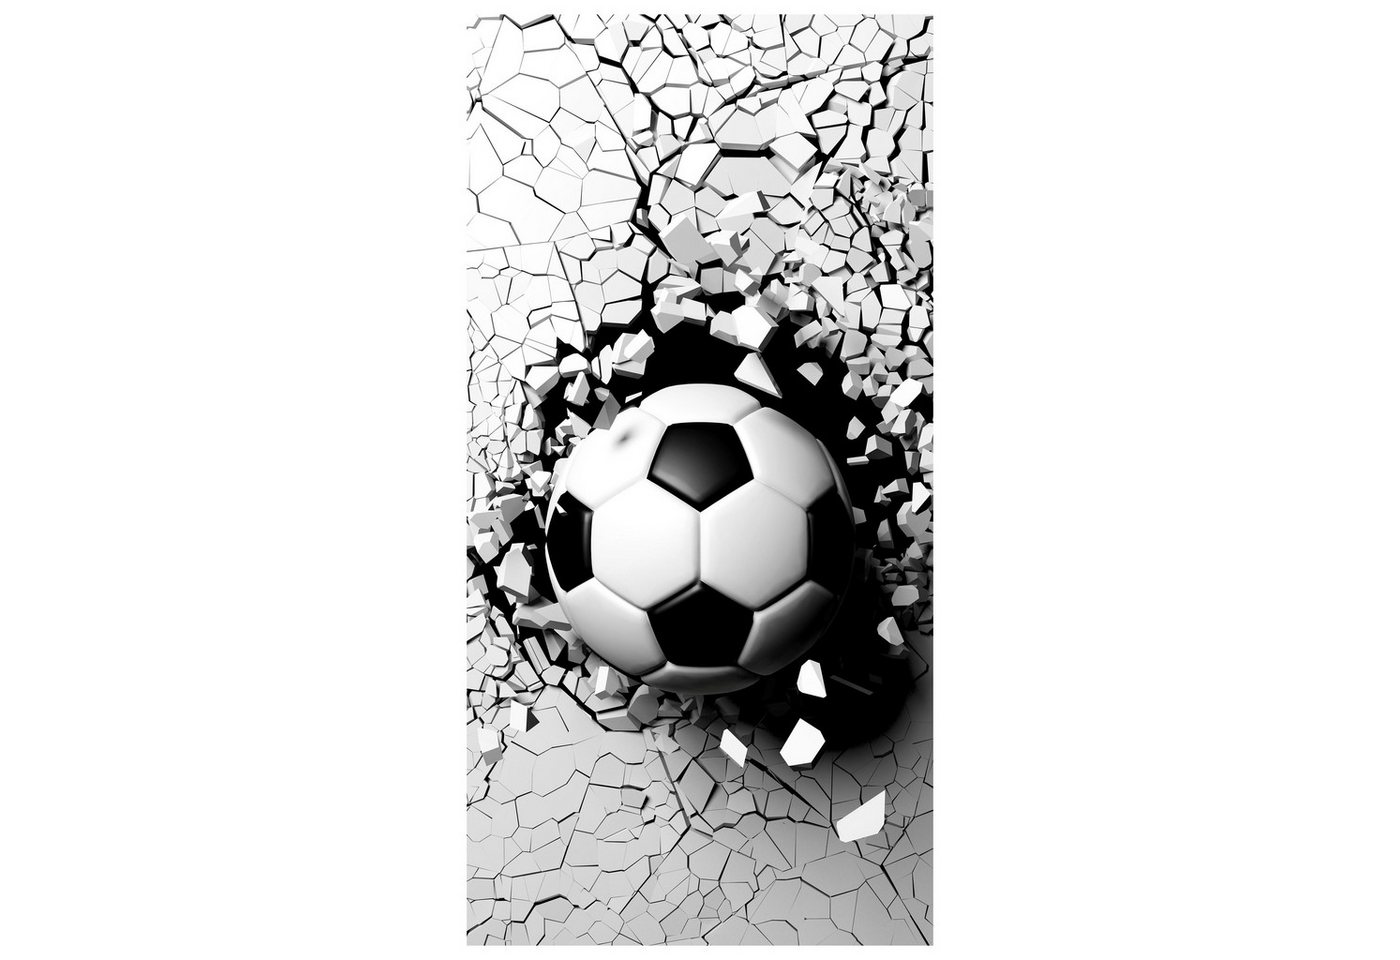 wandmotiv24 Türtapete Fussball durch Wand, 3D, Sport, Ball, glatt, Fototapete, Wandtapete, Motivtapete, matt, selbstklebende Vliestapete von wandmotiv24